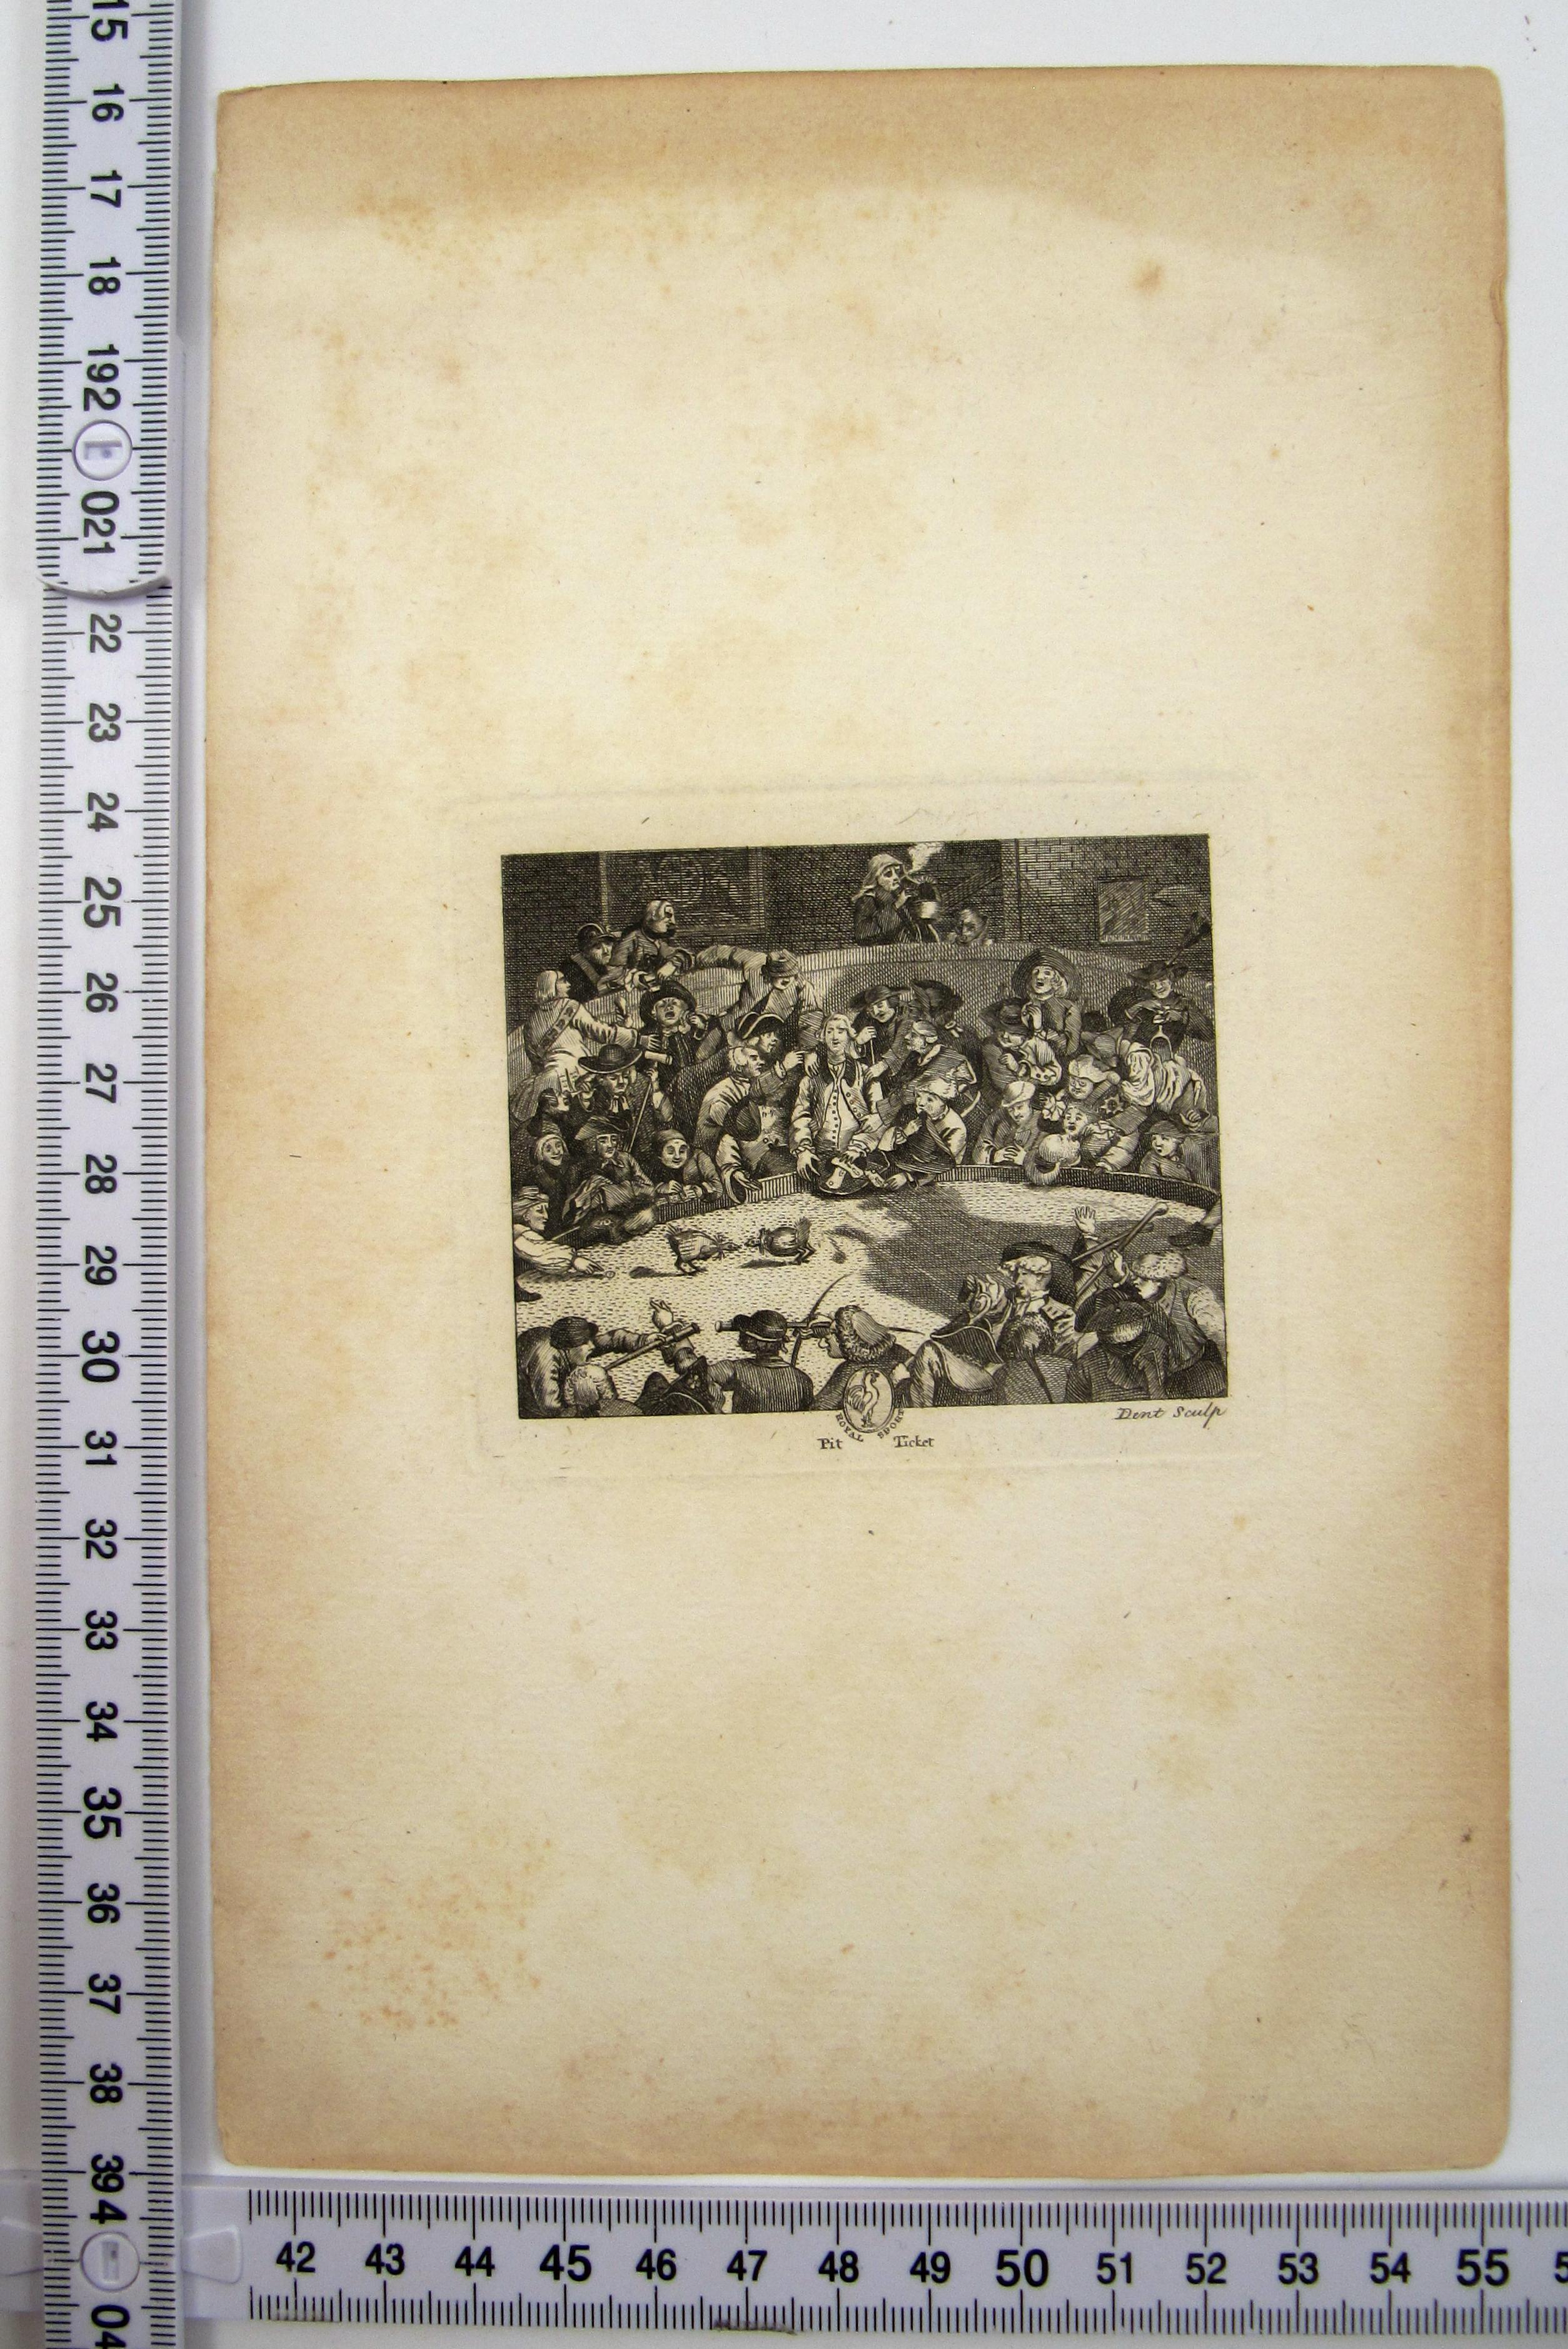 Nach William Hogarth
(Britisch, 1697-1764)

Royal Sports PIT TICKET

- •	Kupferstich von William Dent (Brite), tätig von 1783 bis 1793
- •	Bezeichnet unten rechts: Dent sculp
- •	Platte ca. 7,6 x 9,1cm
- •	Bild ca. 6,3 x 7,9 cm
- •	Blatt ca. 23,5 x